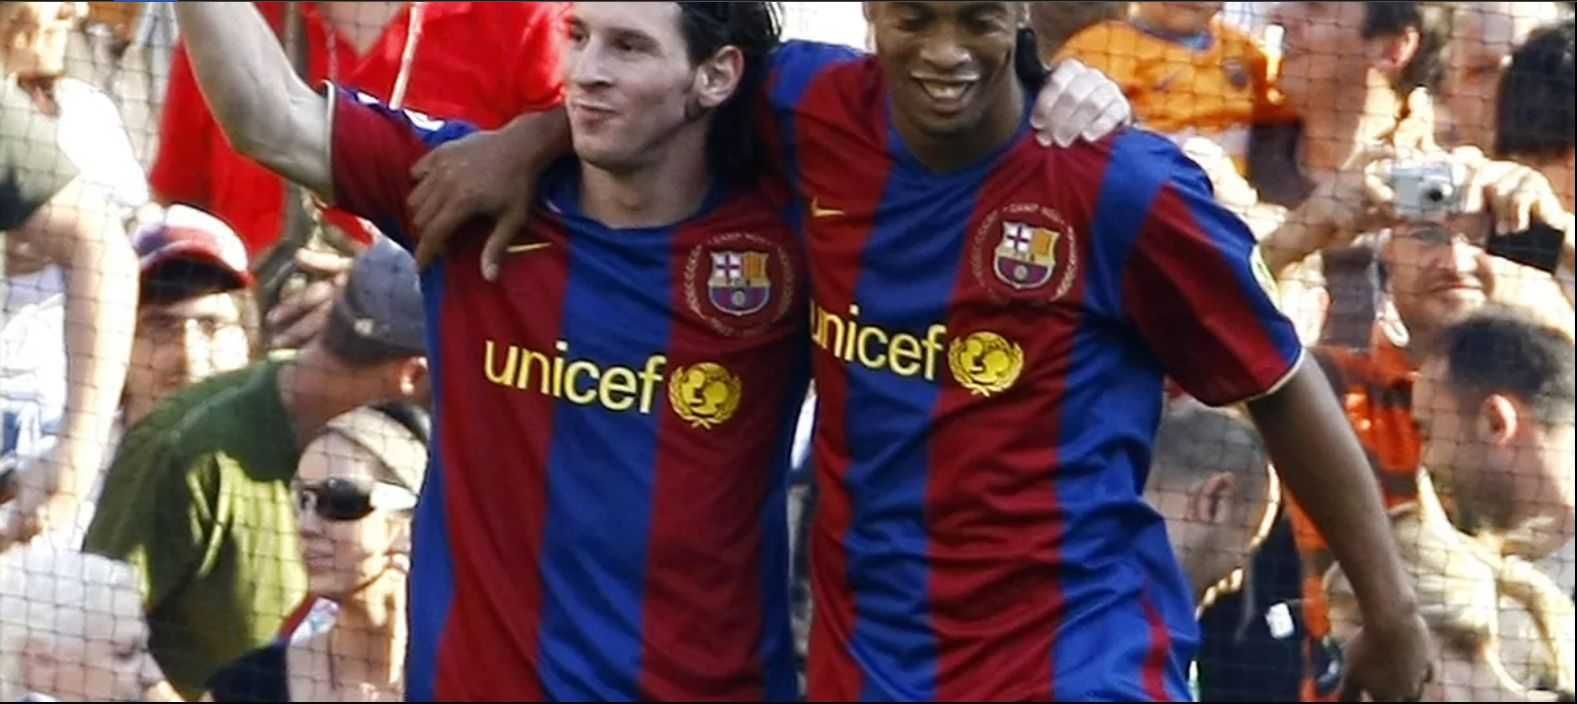 Minge de fotbal cu autograful lui Ronaldinho